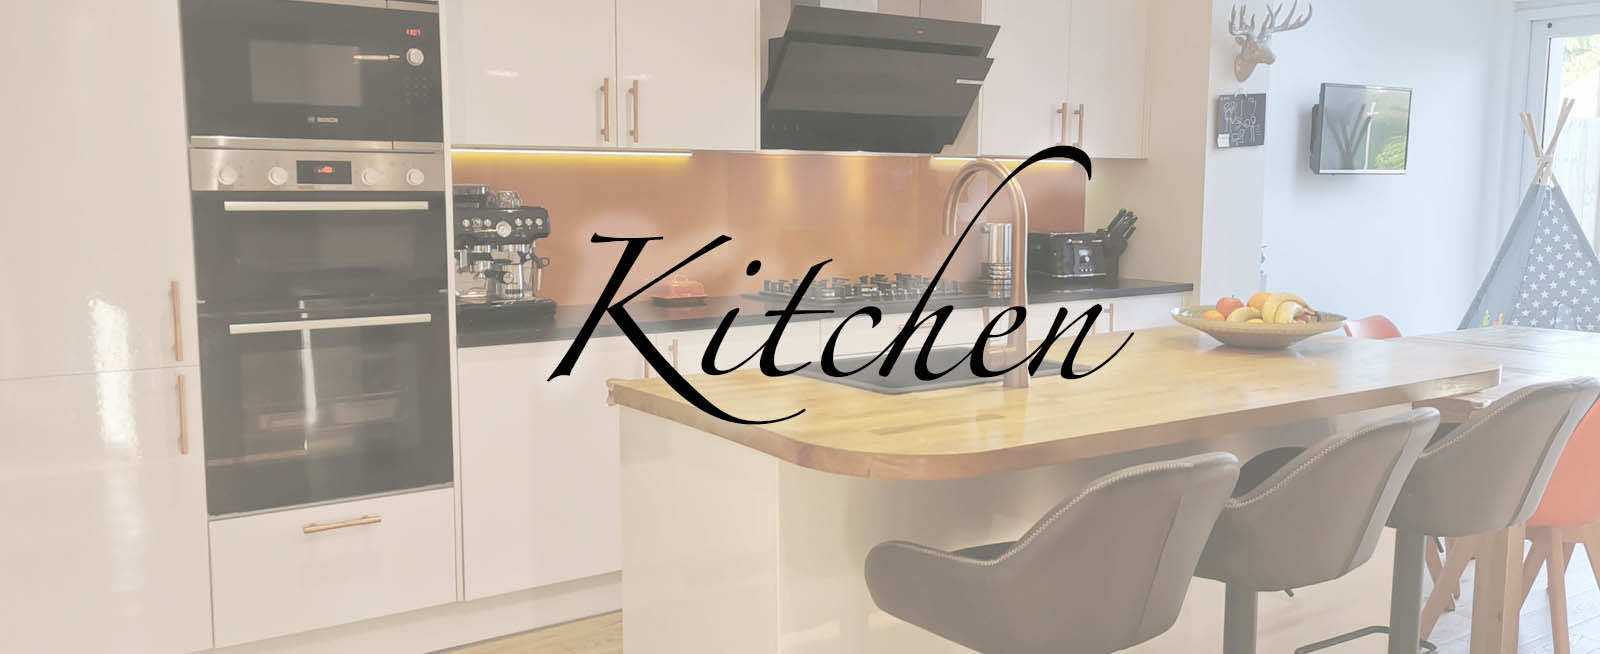 Cream and copper accessories kitchen  Copper kitchen accessories, Copper kitchen  decor, Kitchen